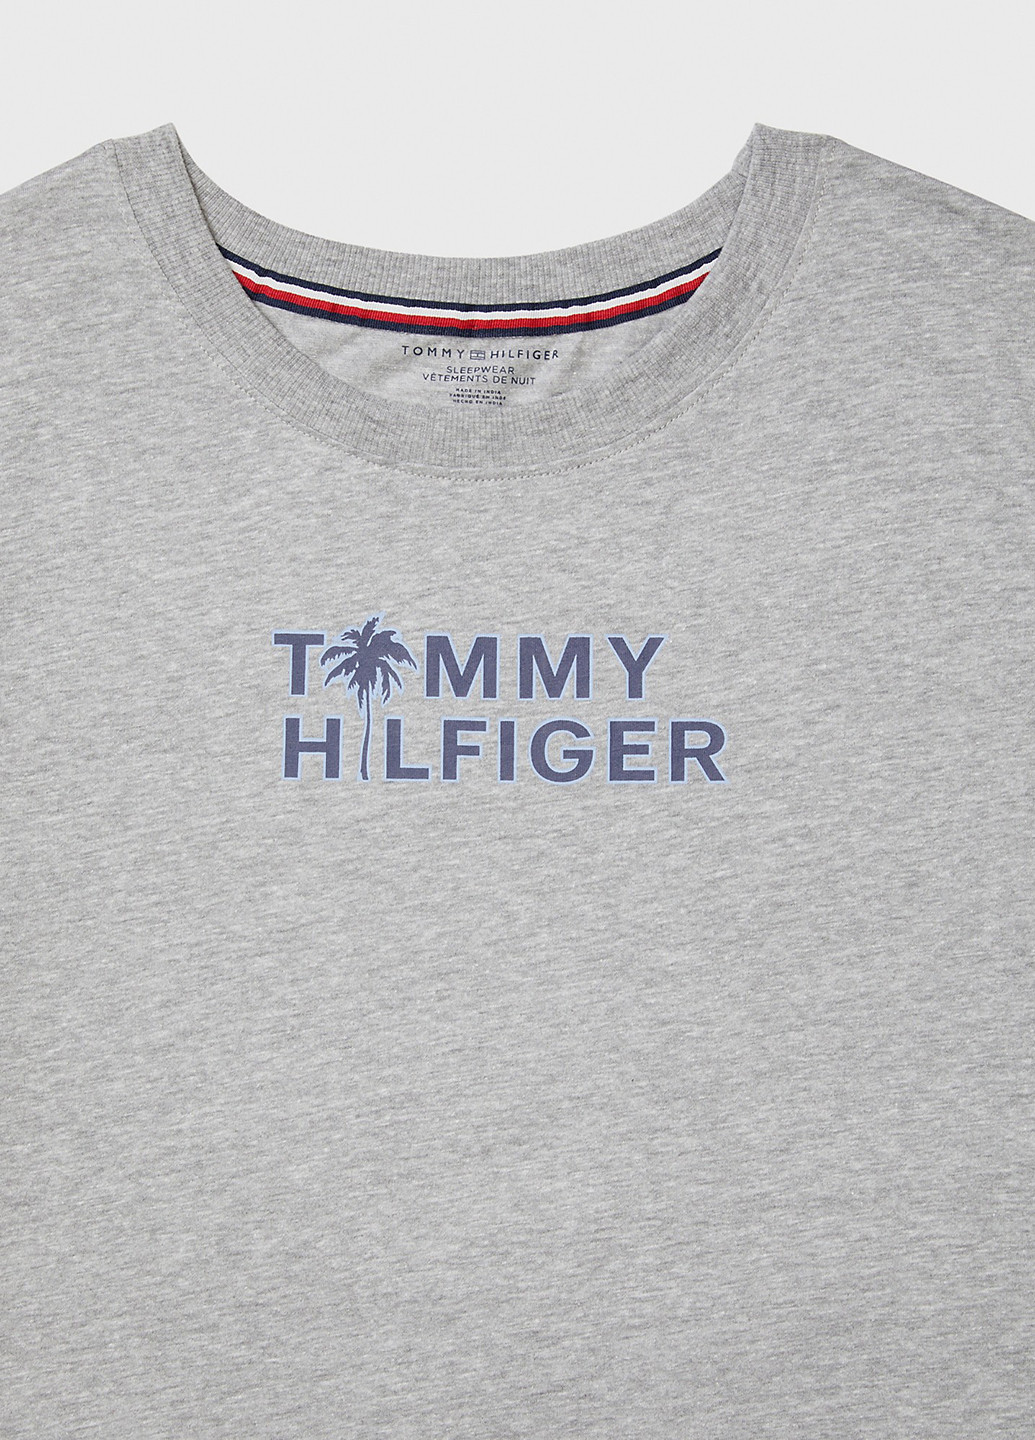 Серое домашнее платье платье-футболка Tommy Hilfiger с надписью